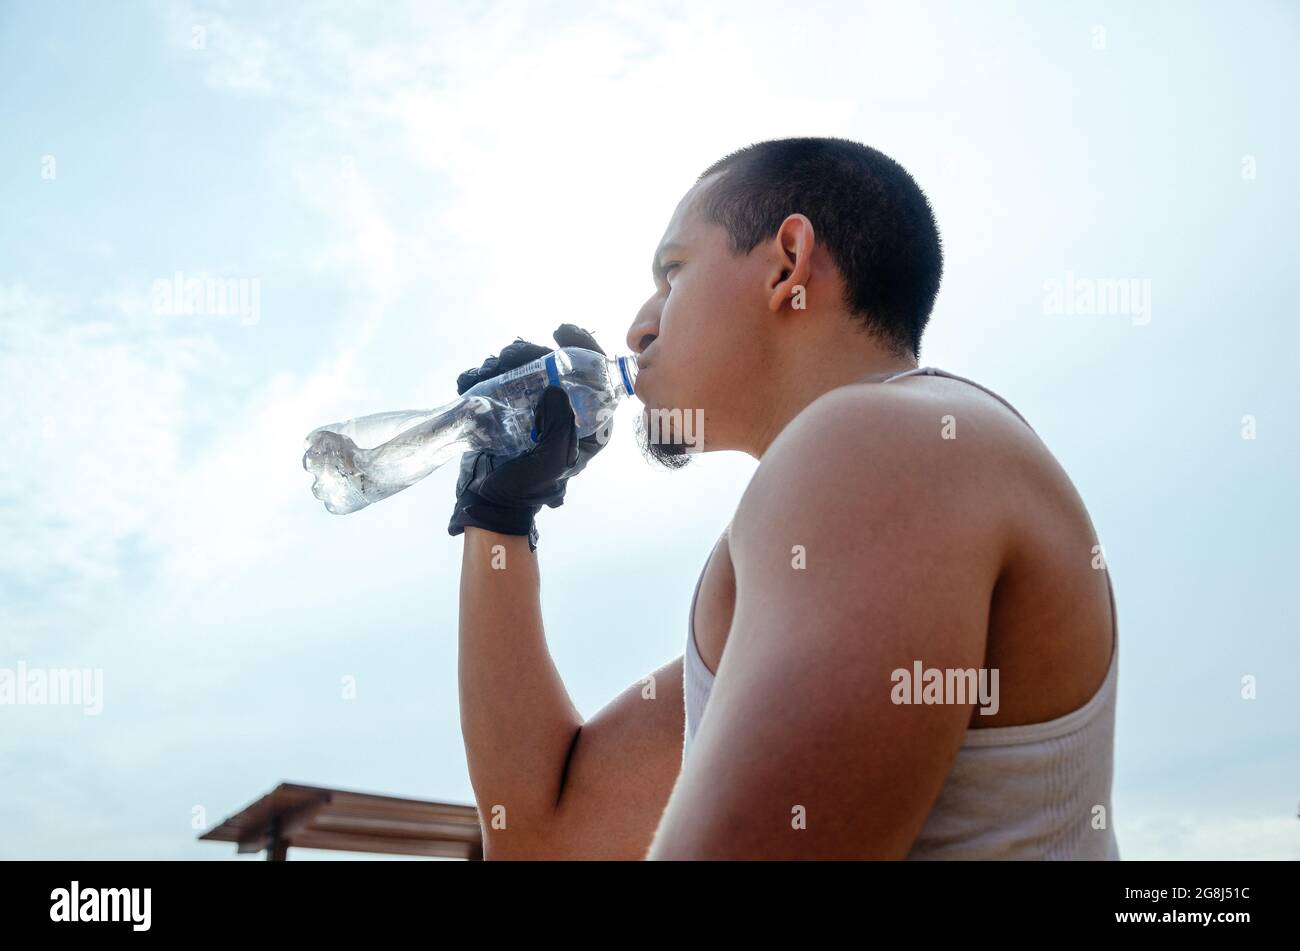 Giovane atleta esausto che beve acqua fresca per rinfrescarsi durante una pista di corsa. Foto Stock